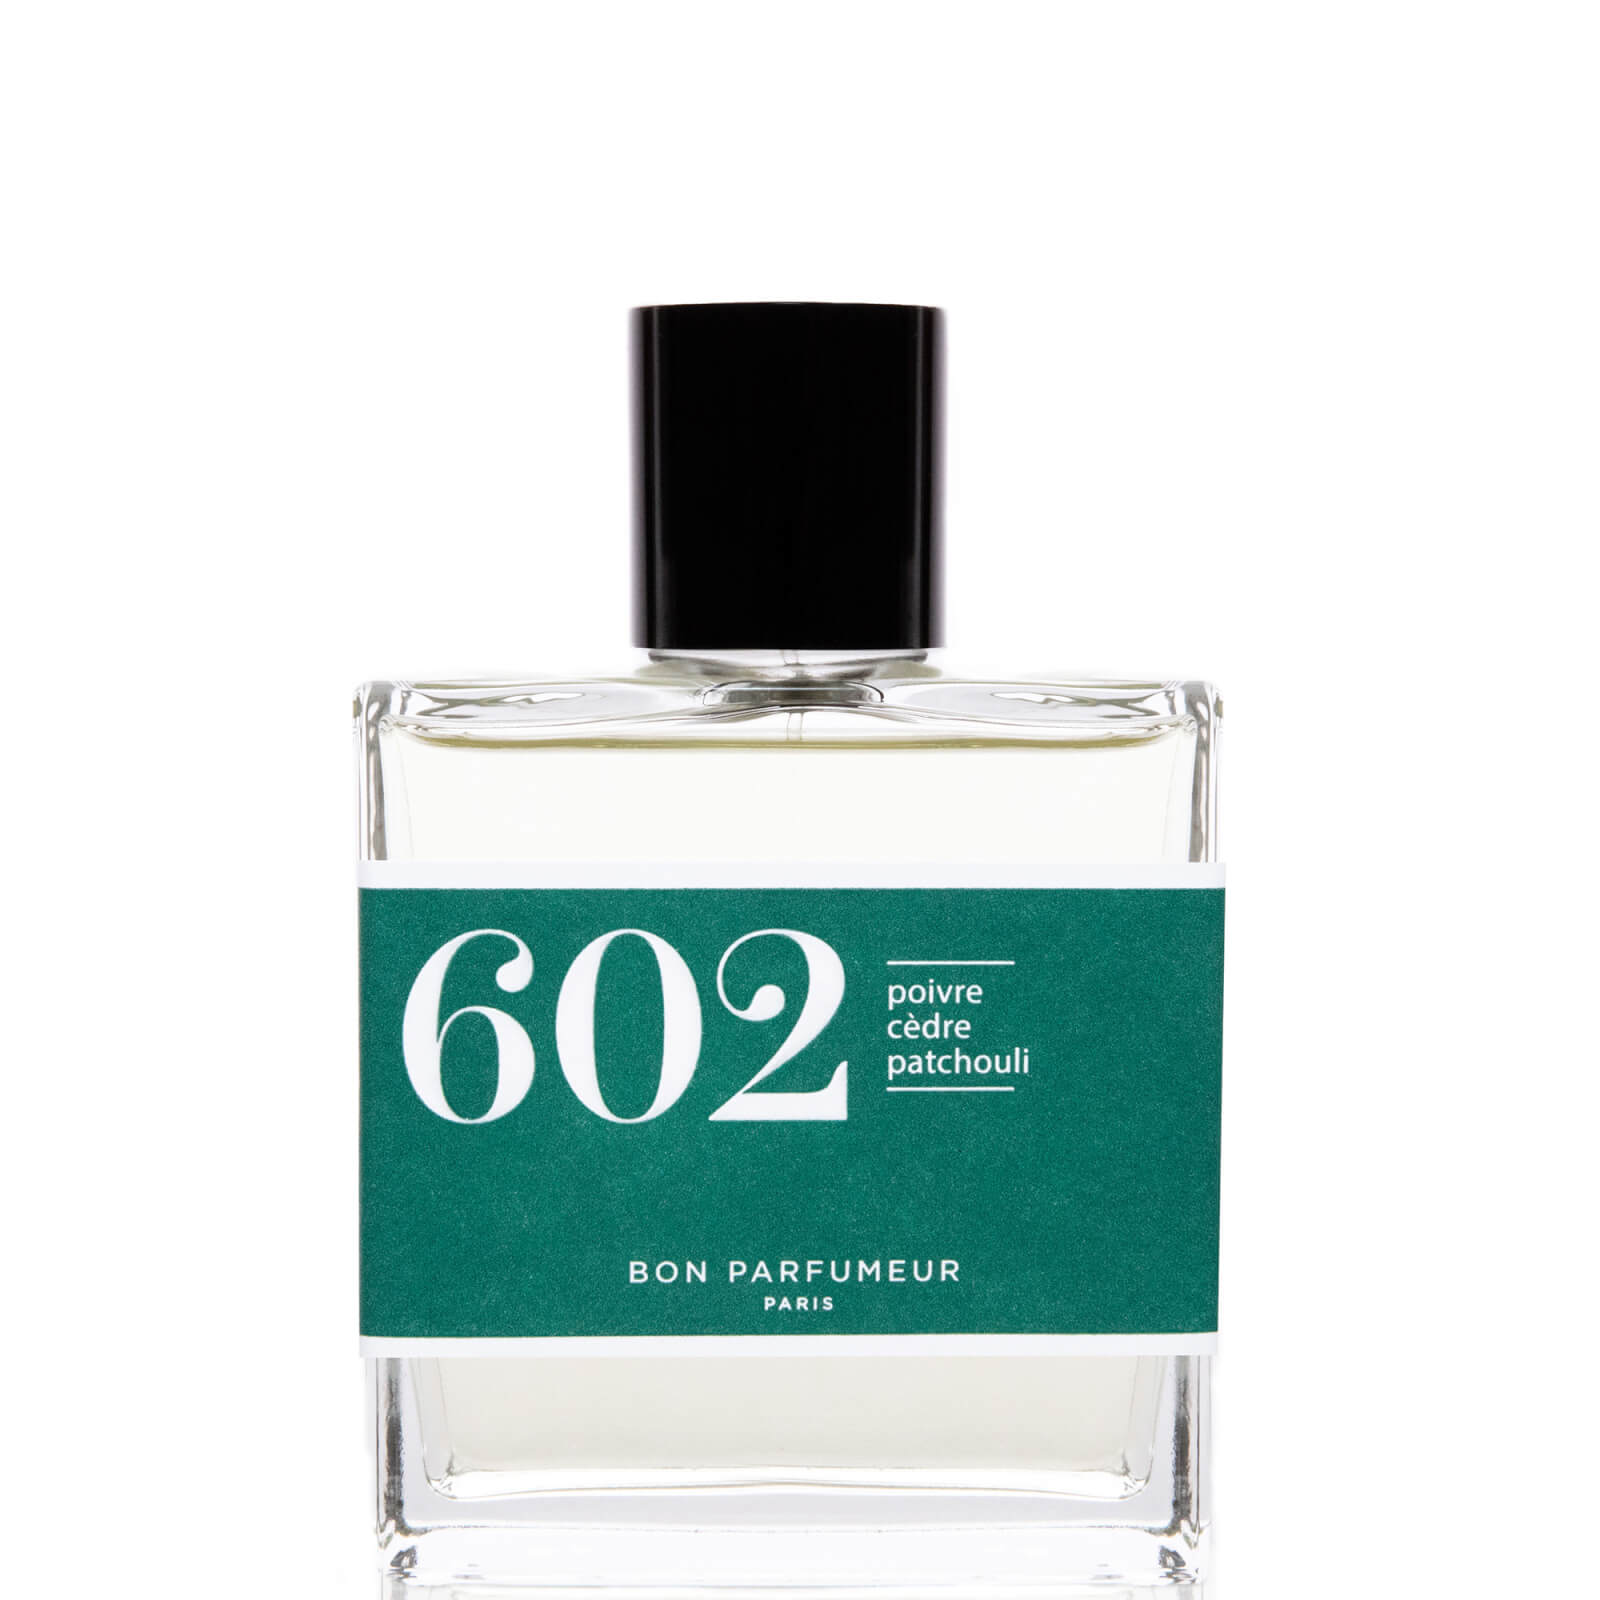 Image of Bon Parfumeur 602 Pepe Cedro Patchouli Eau de Parfum Profumo - 100ml